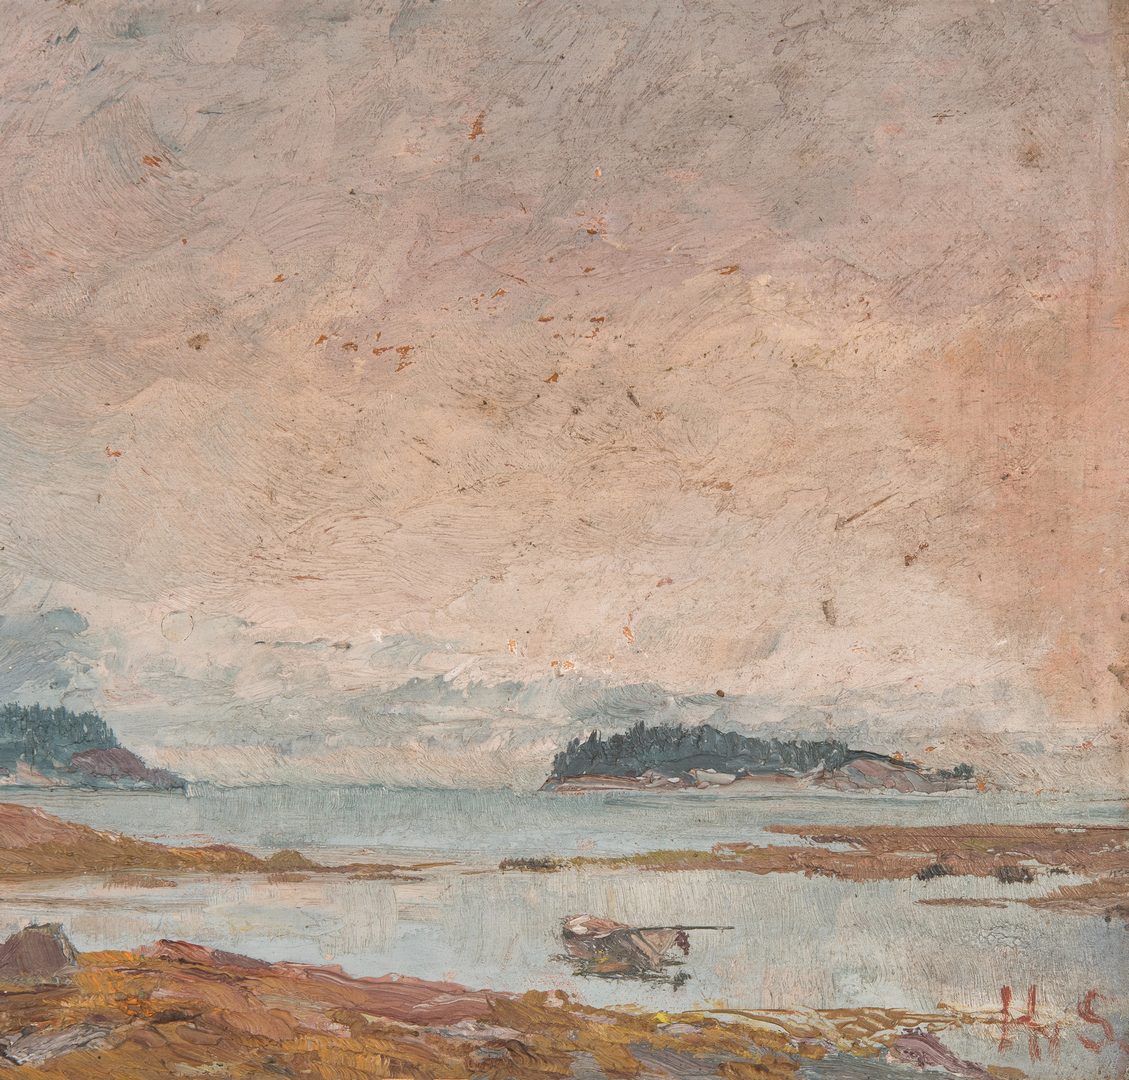 Lot 145: English Coastal Landscape c. 1896, signed HS